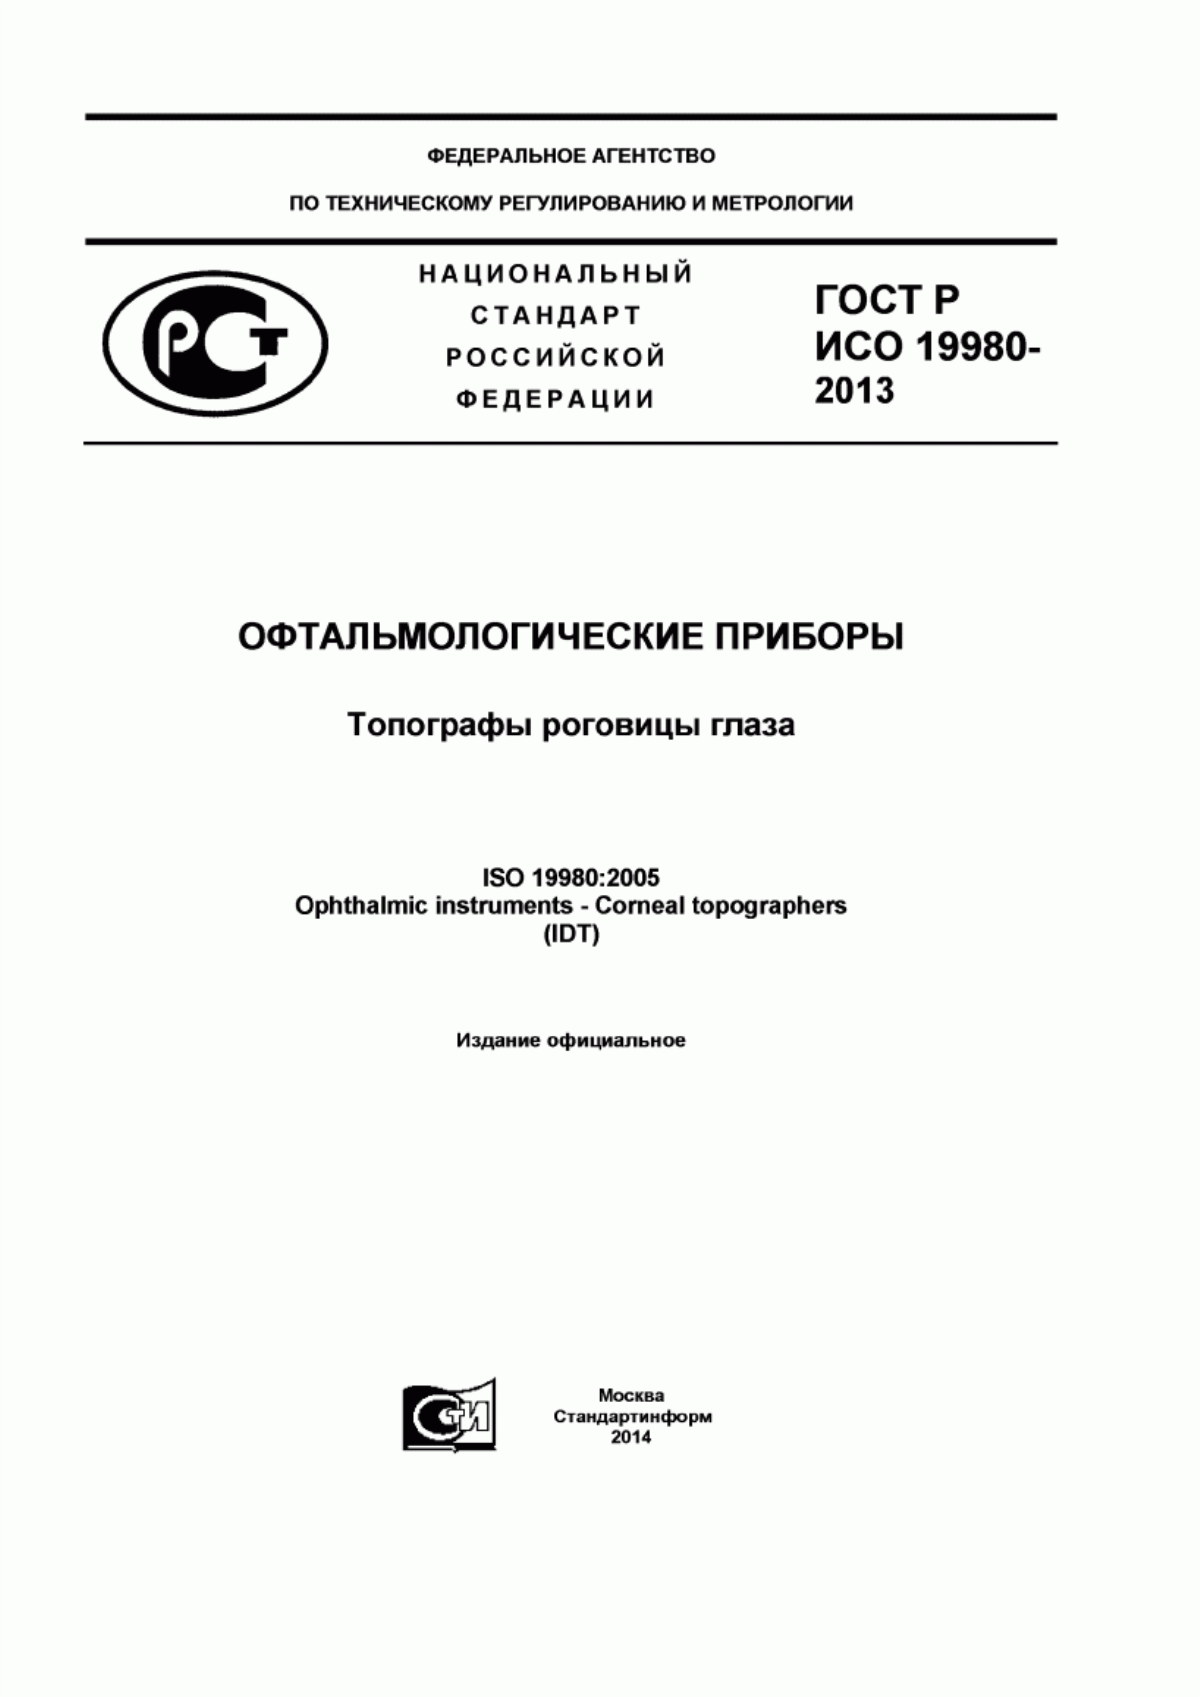 ГОСТ Р ИСО 19980-2013 Офтальмологические приборы. Топографы роговицы глаза